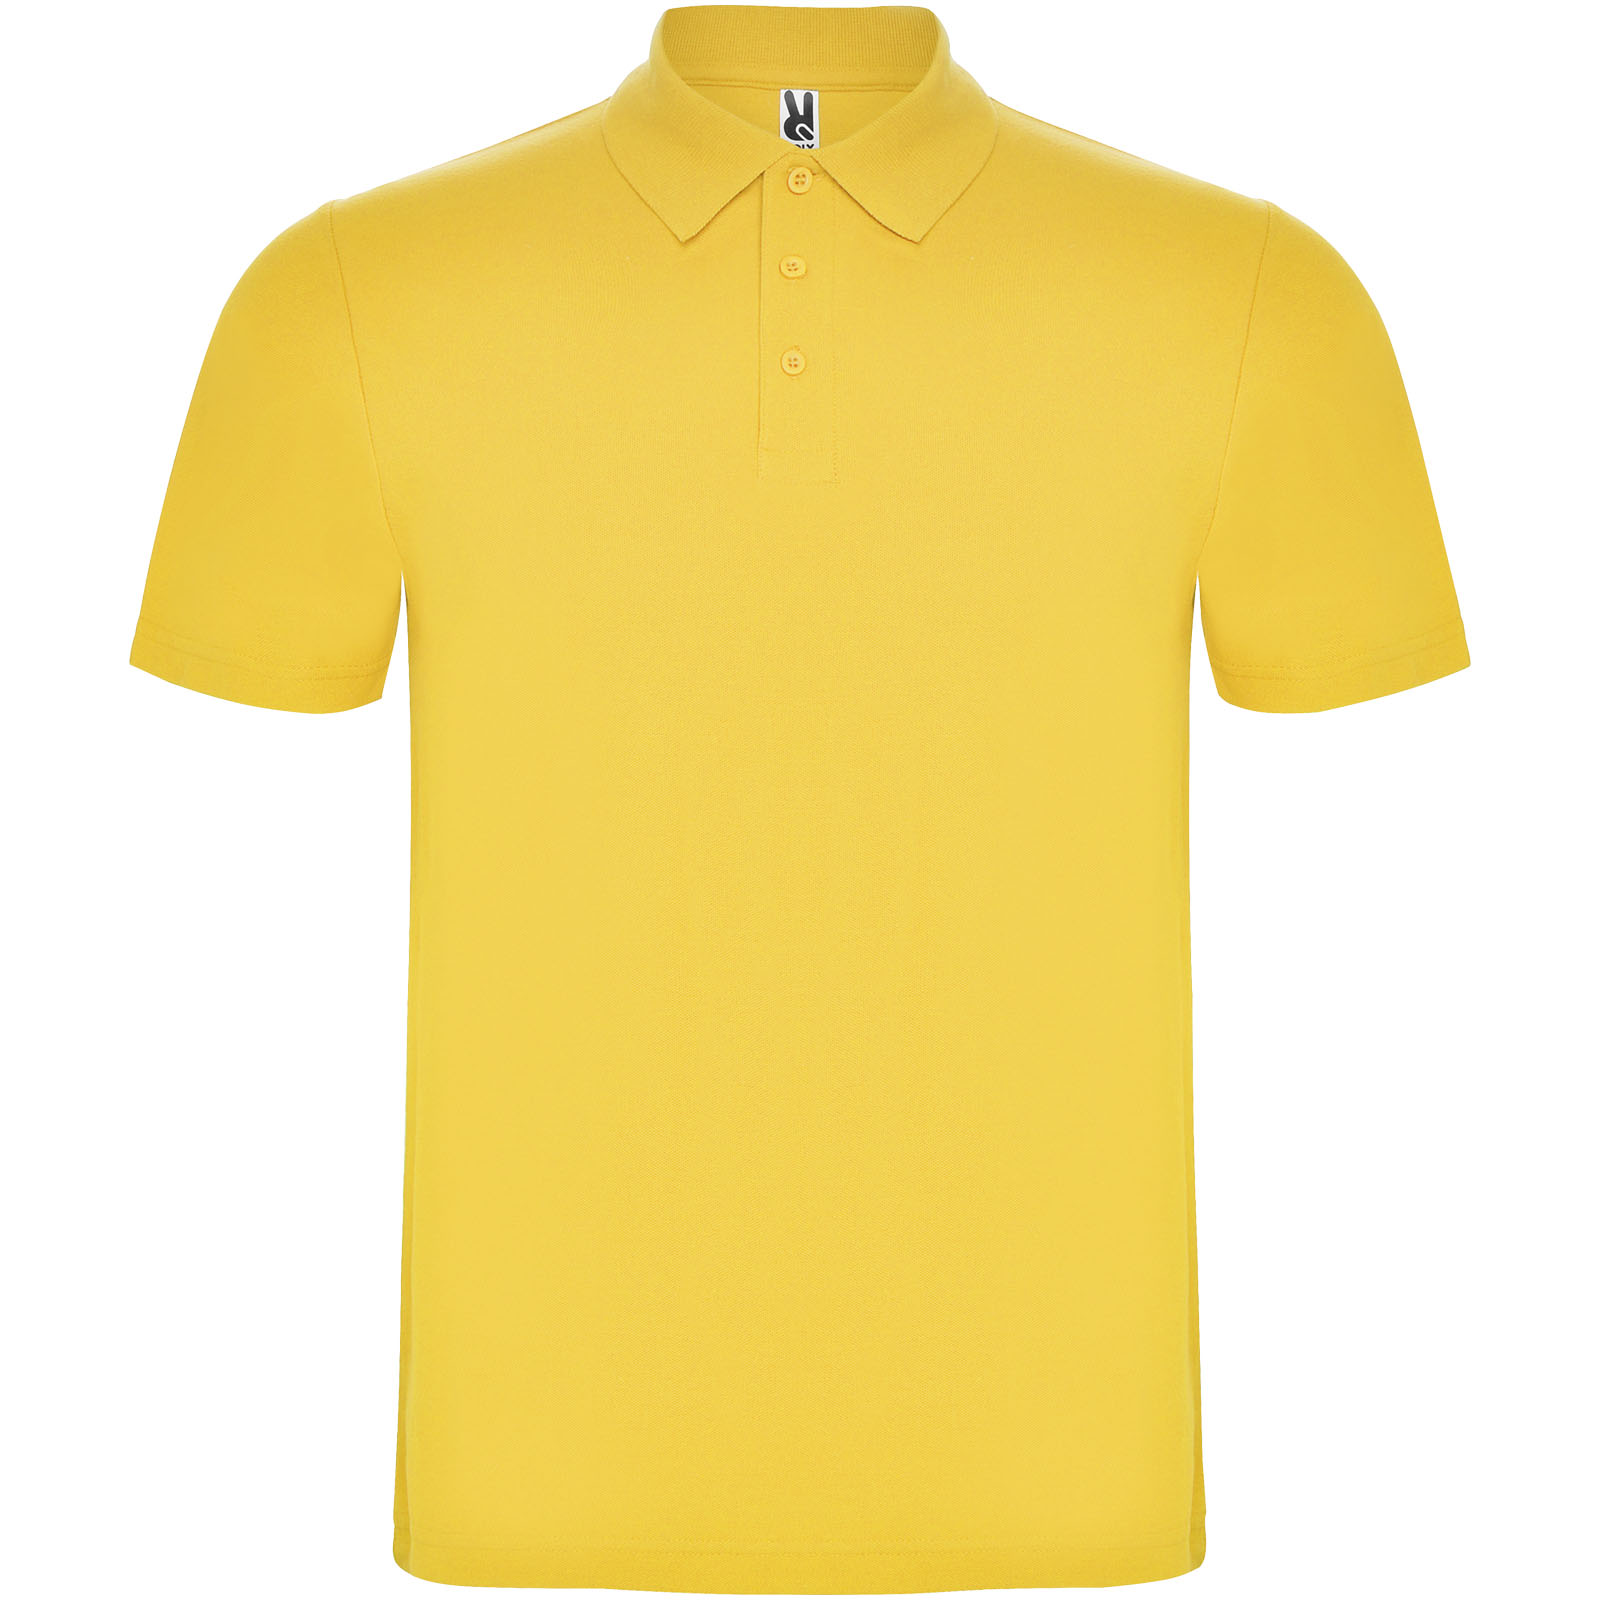 Clothing - Austral short sleeve unisex polo